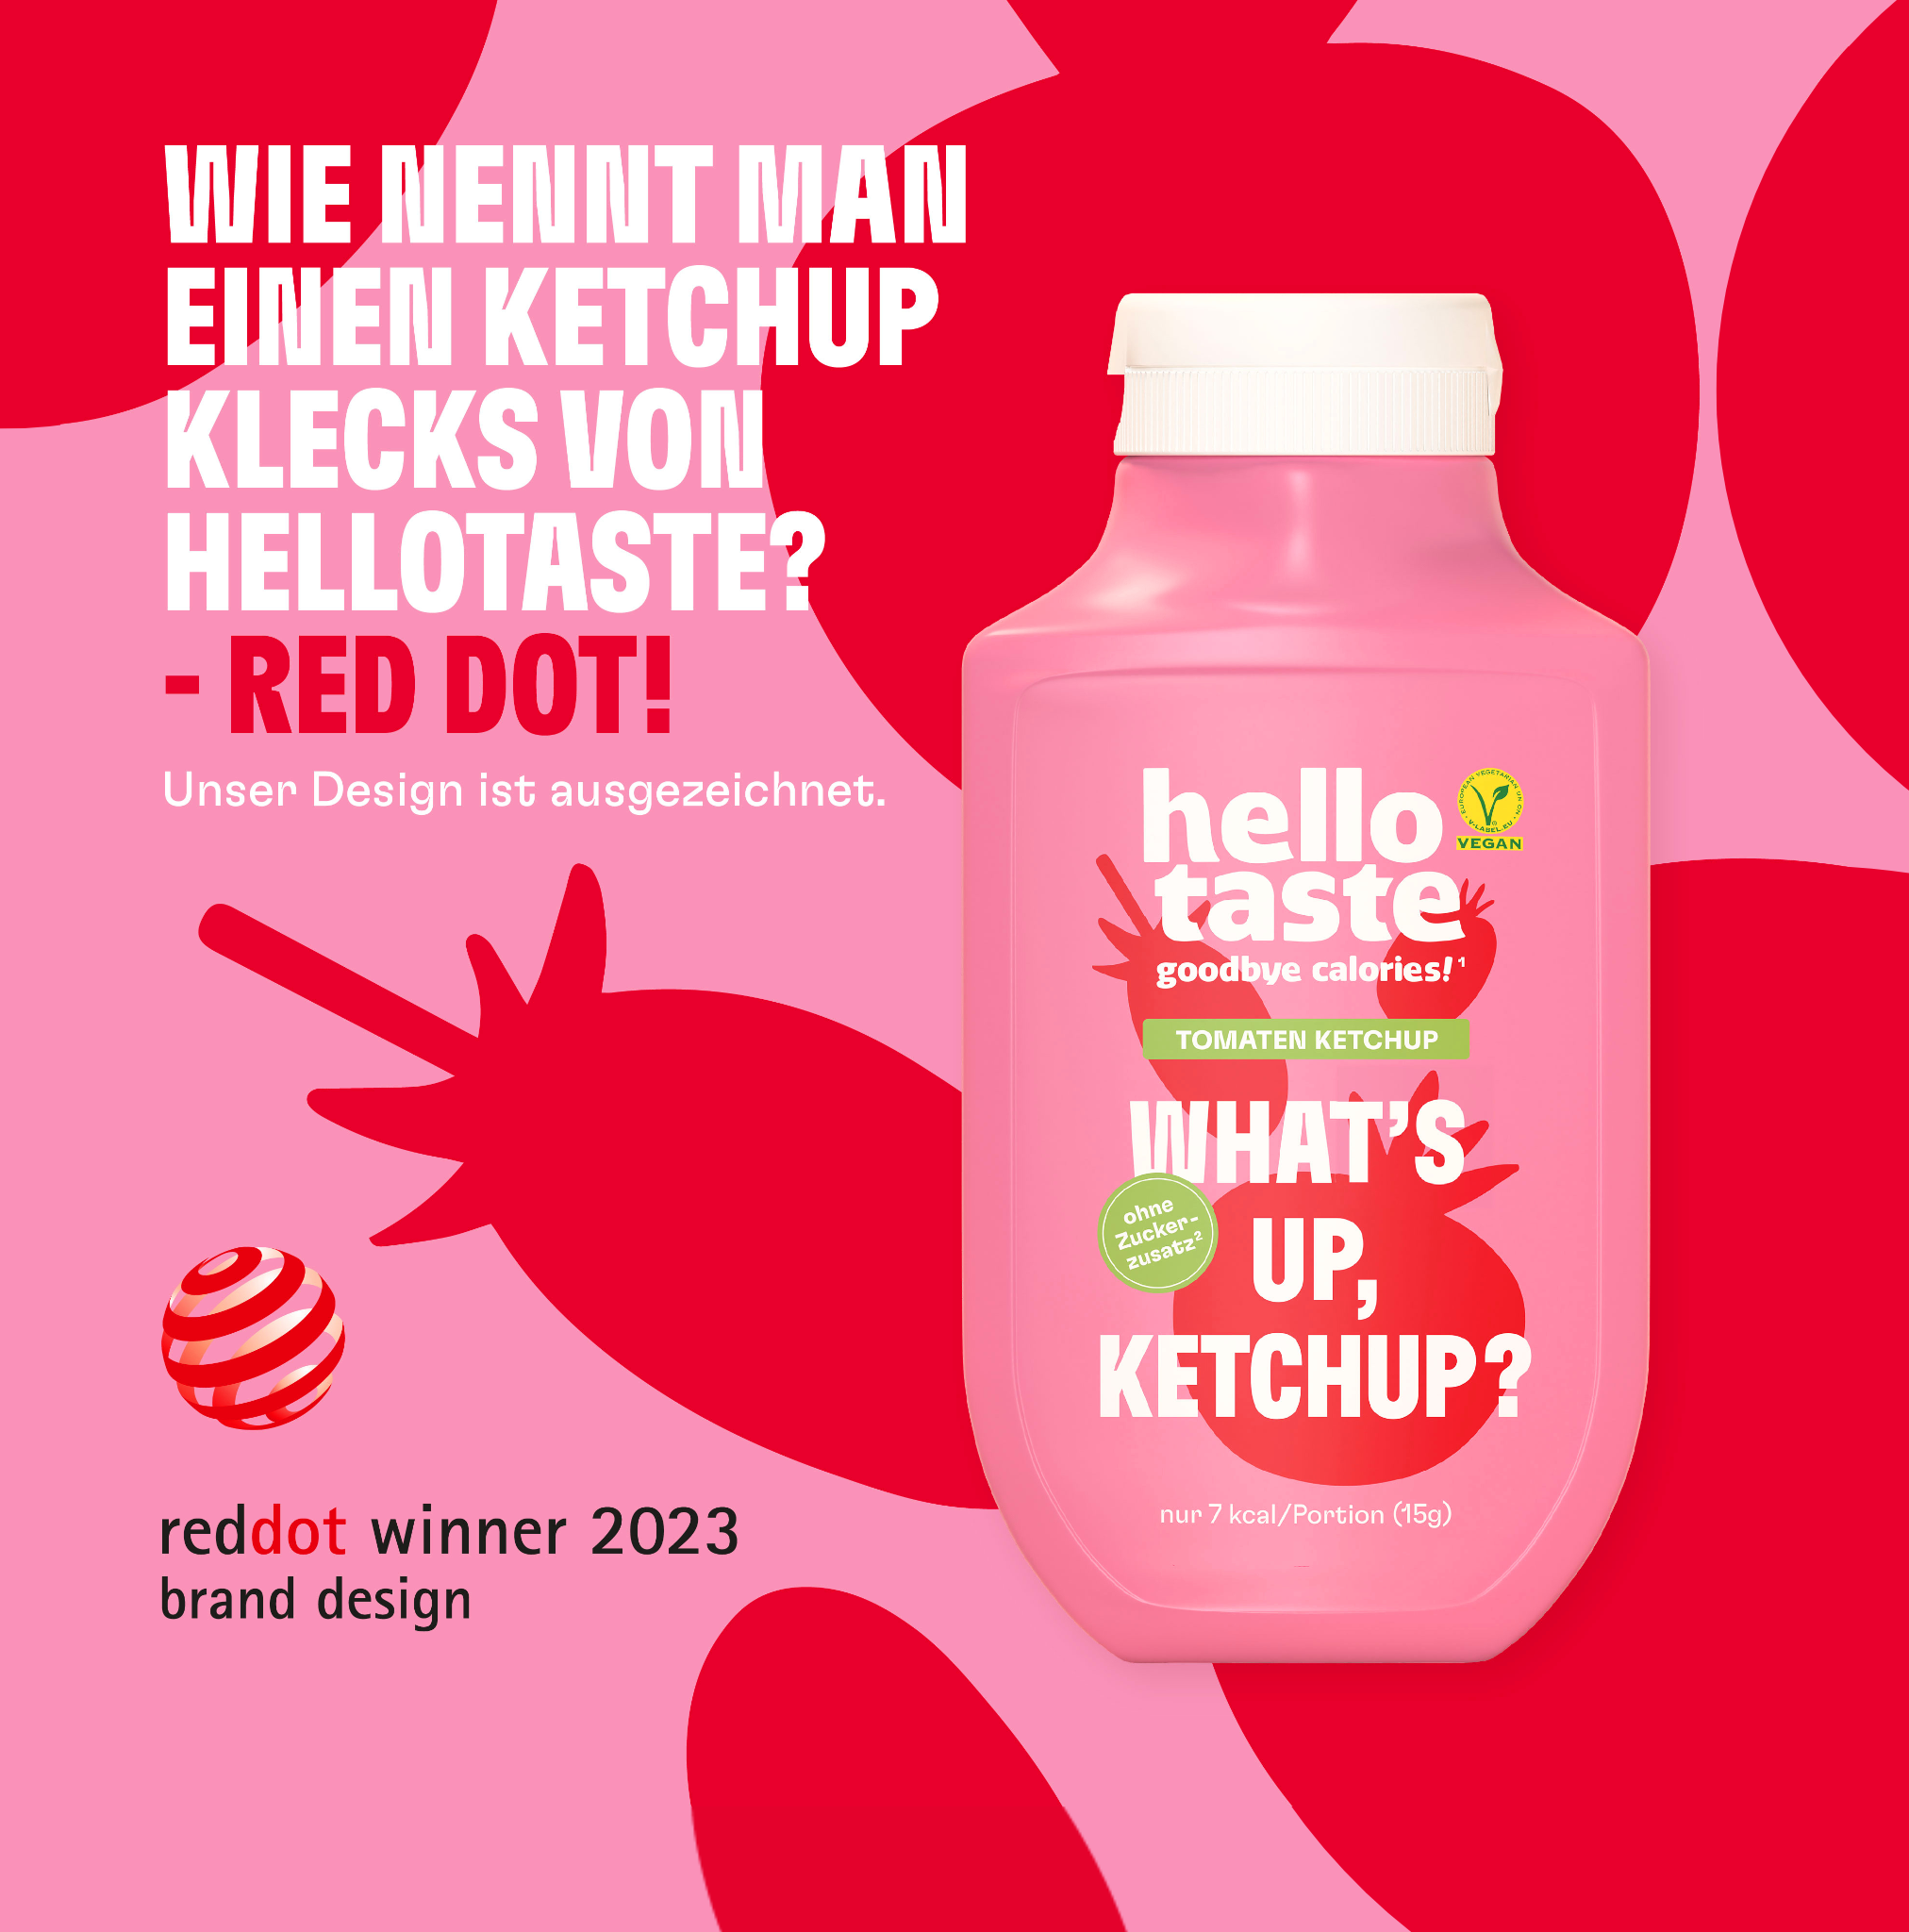 hellotaste Red dot Award winner 2023